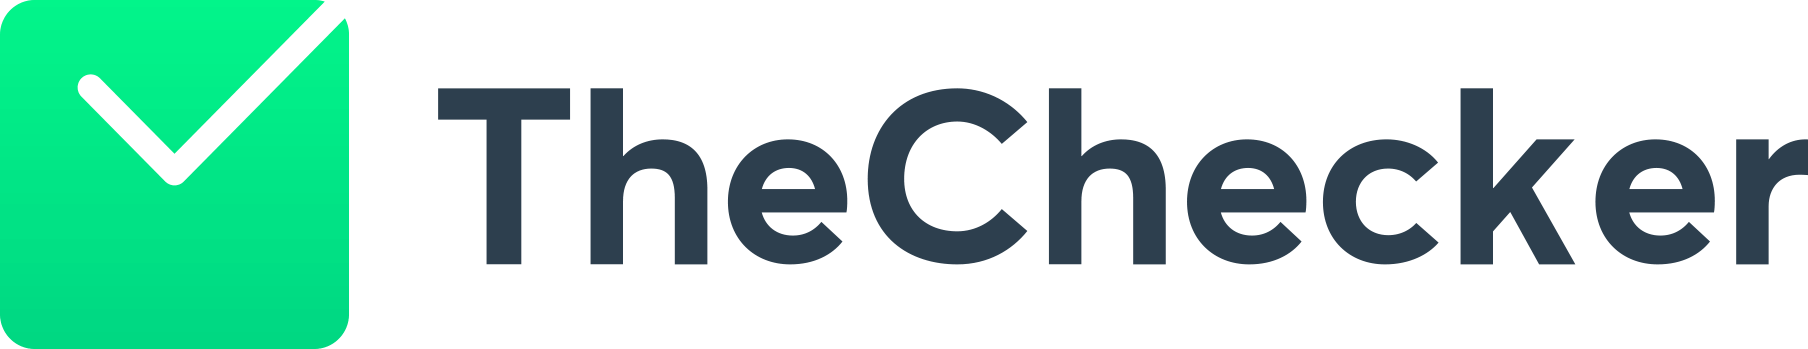 Logotipo TheChecker